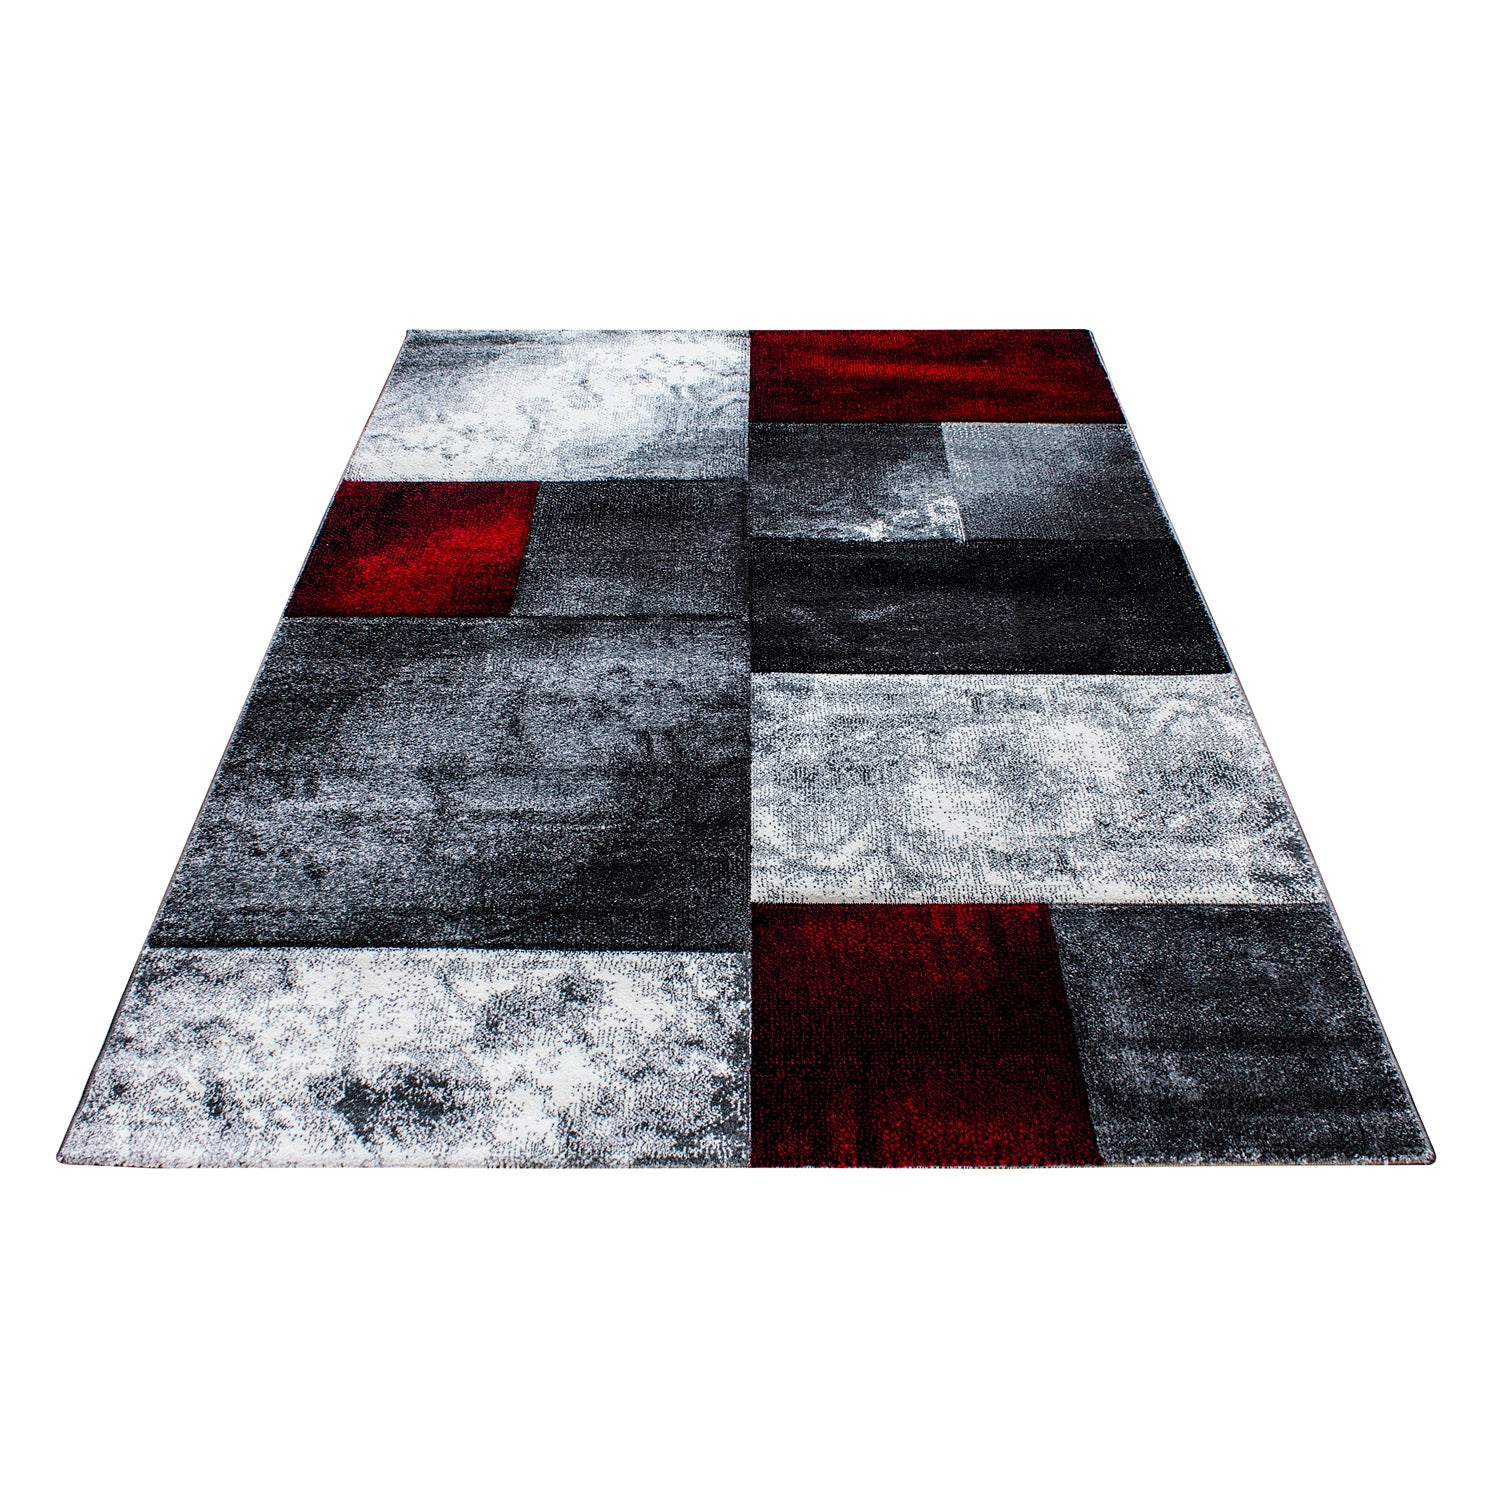 Kurzflor Design Teppich Rechteck Karo Muster Wohnzimmerteppich Grau Rot Meliert